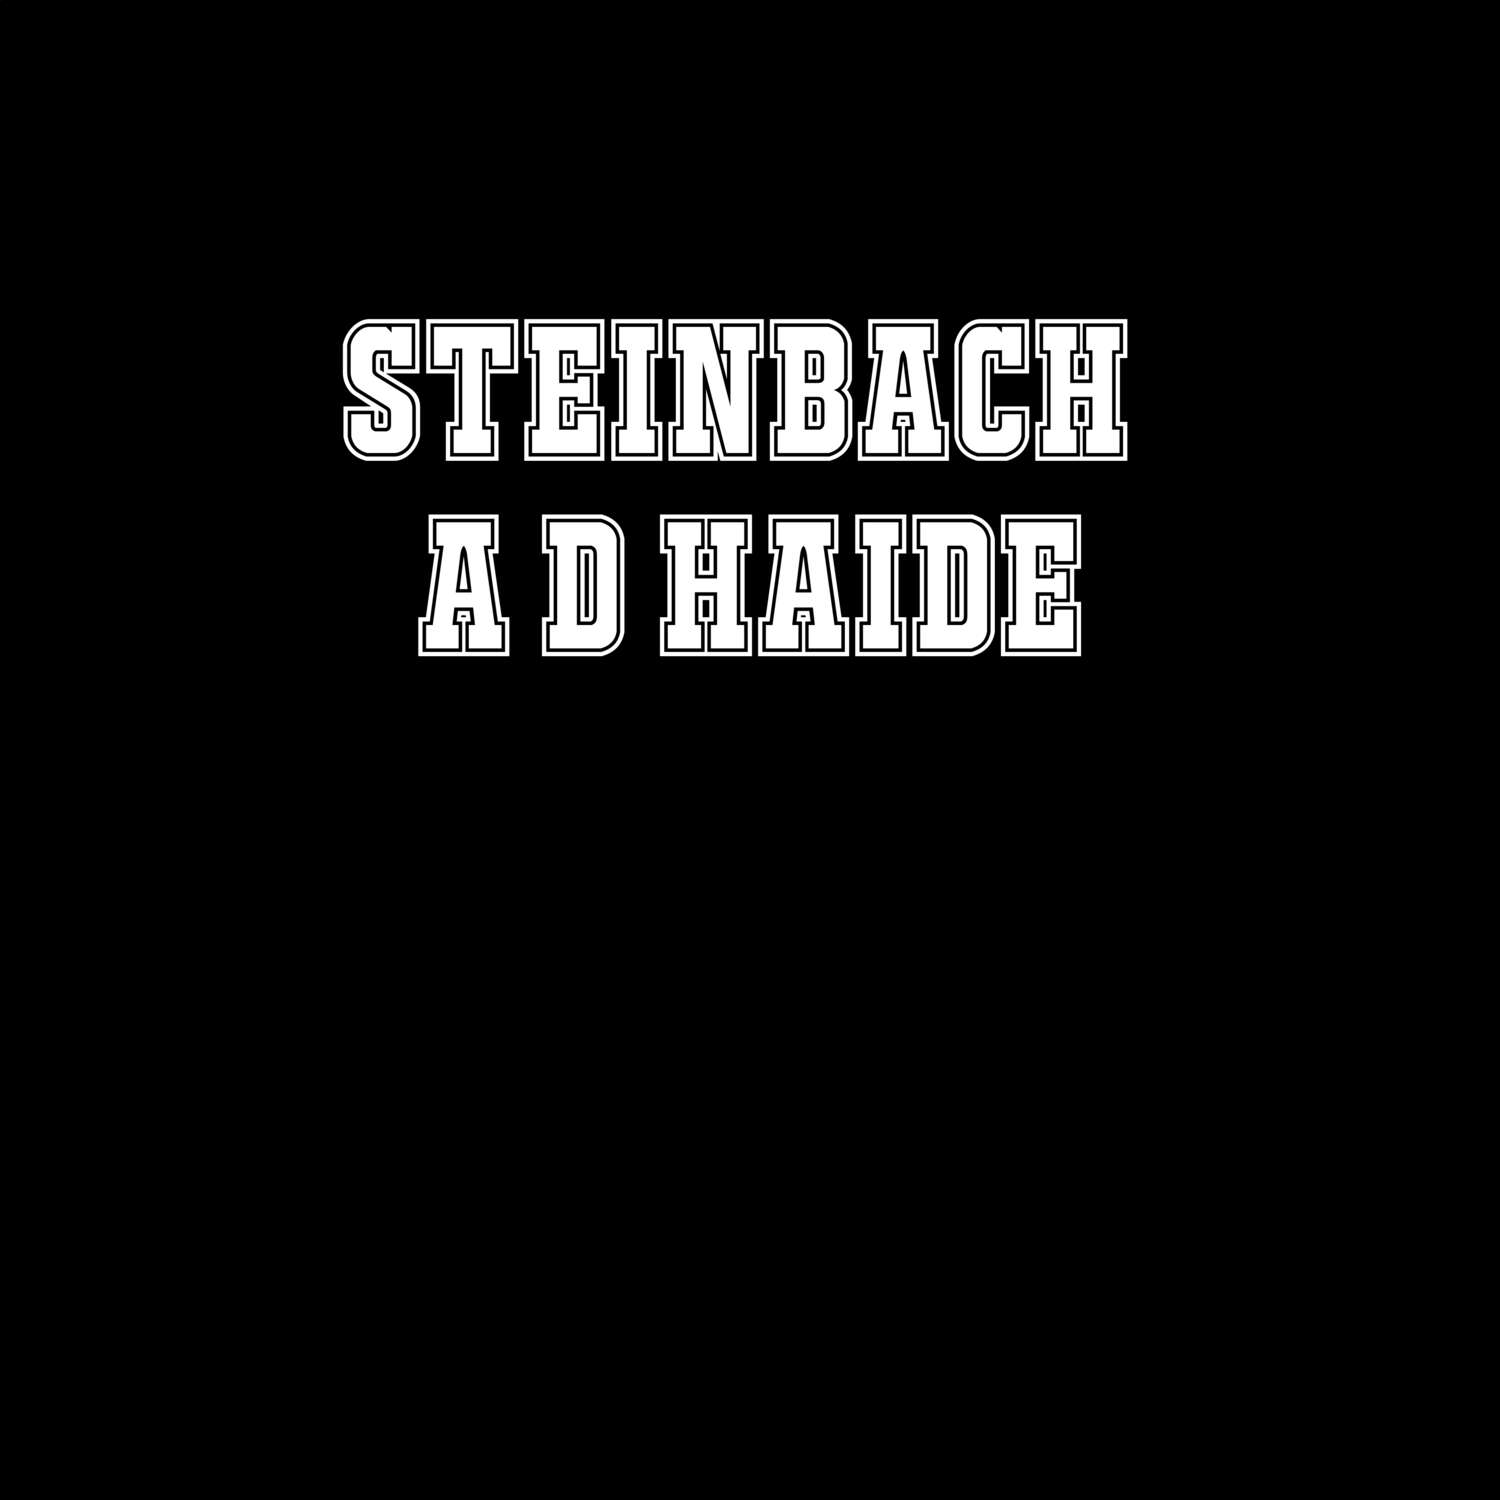 Steinbach a d Haide T-Shirt »Classic«